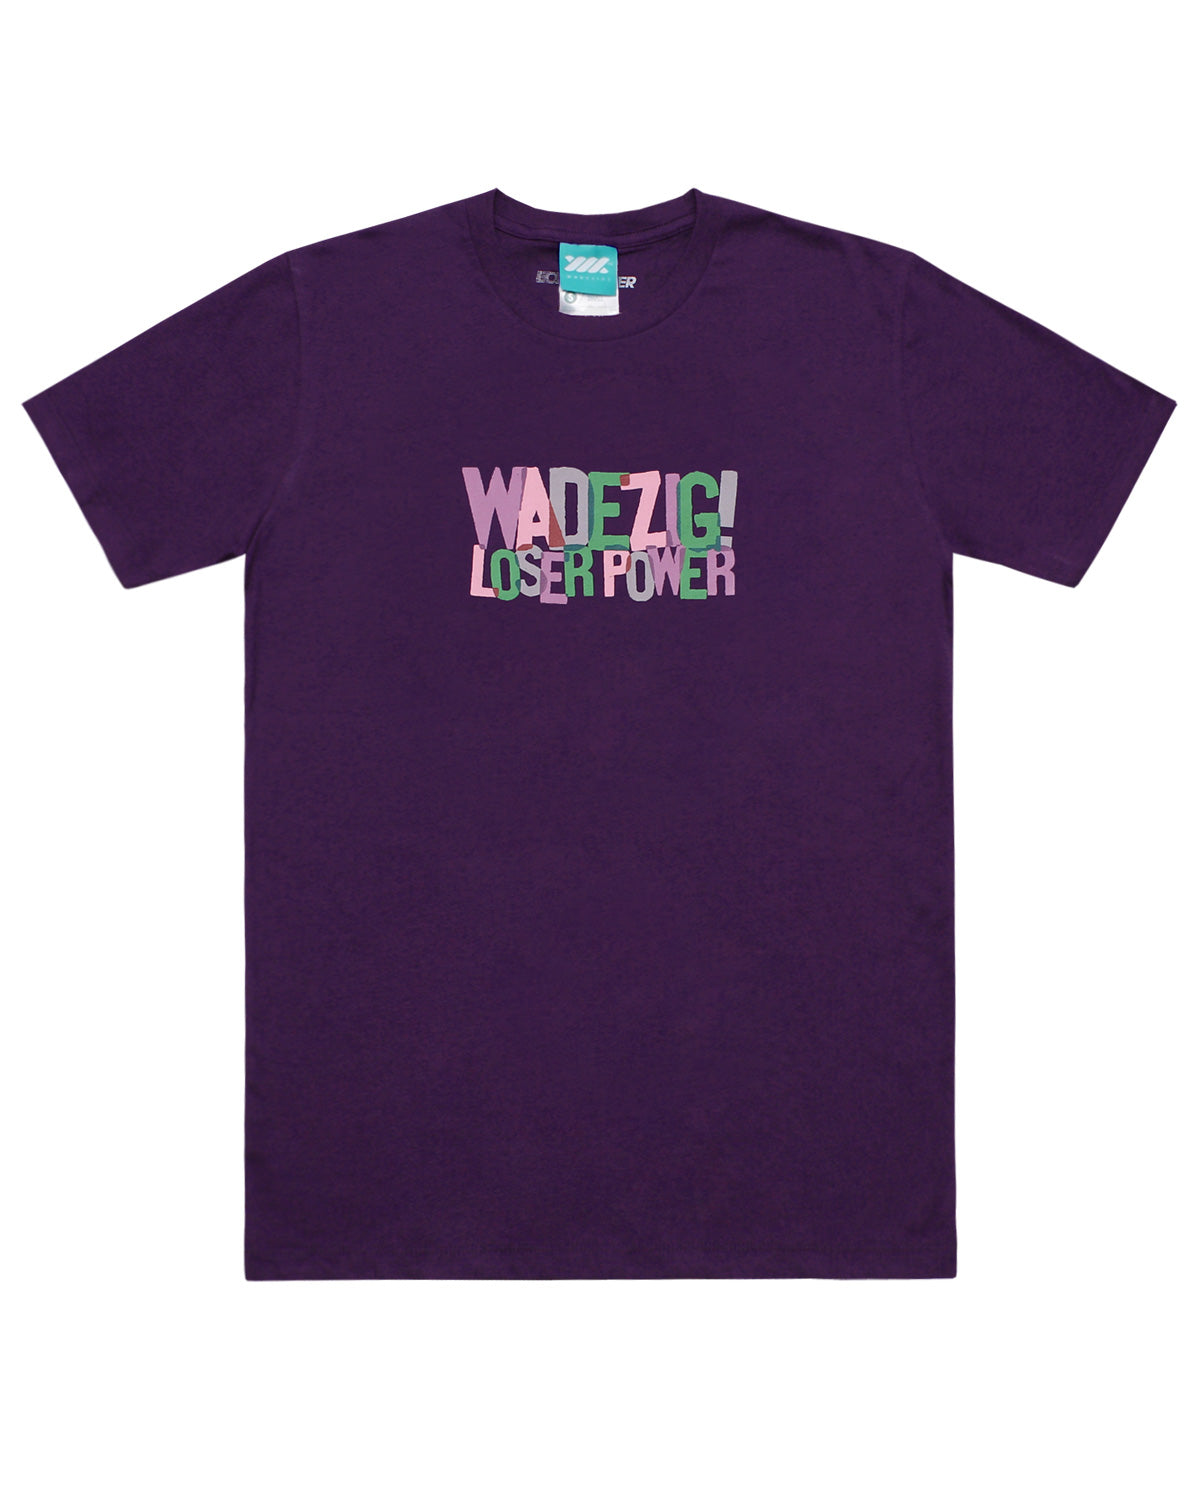 Wadezig! T-Shirt - Intersect Purple